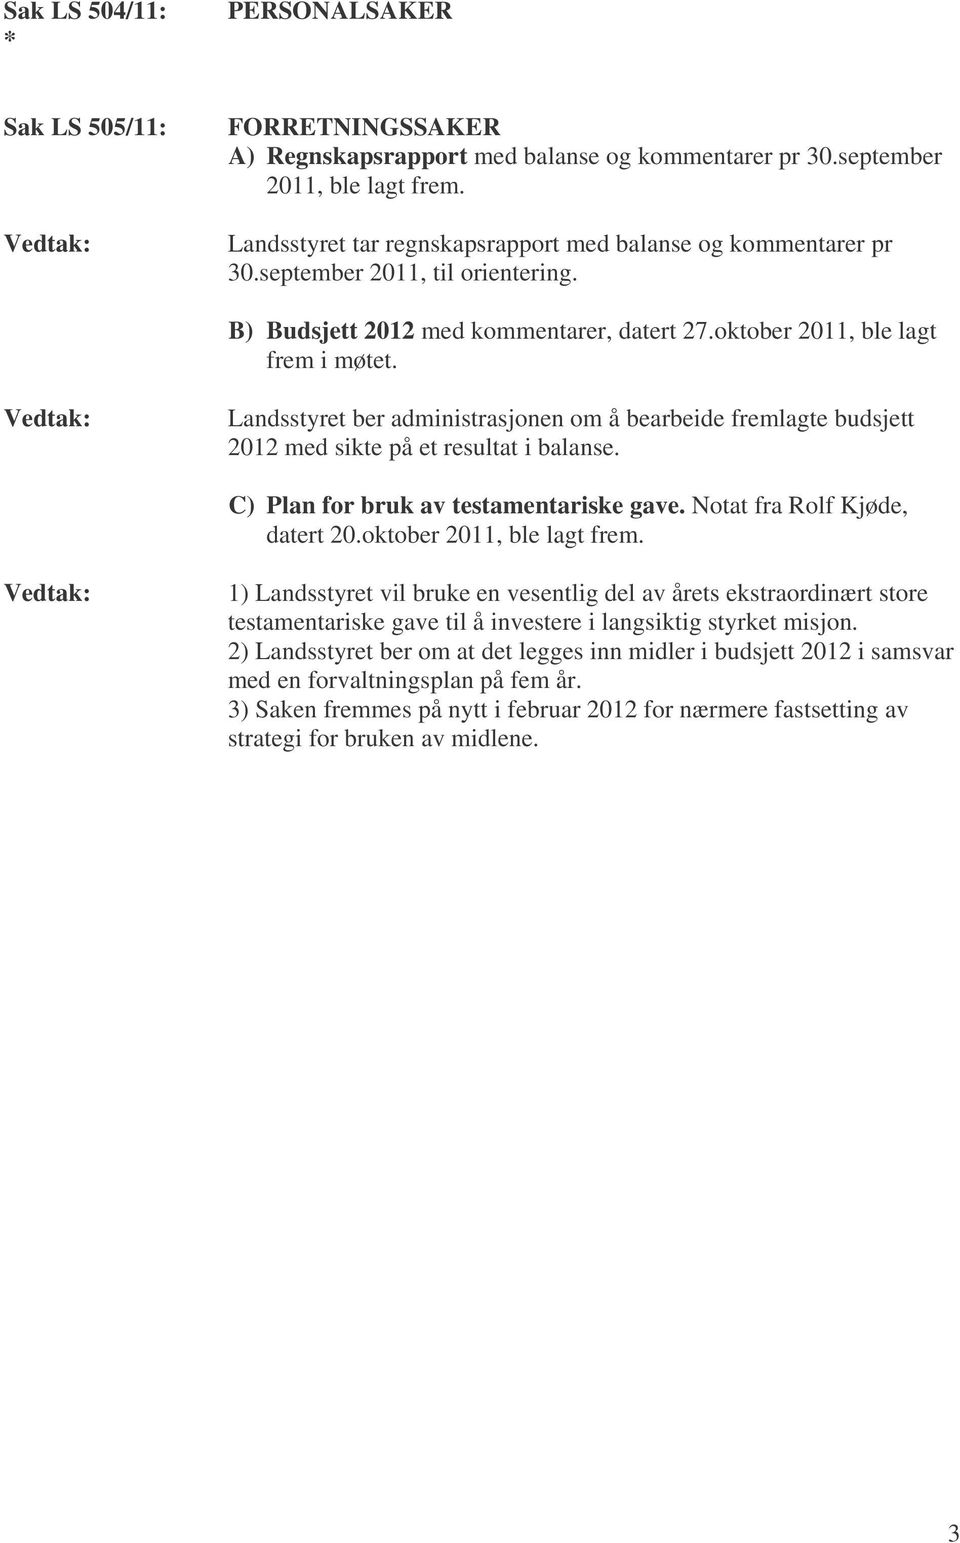 Landsstyret ber administrasjonen om å bearbeide fremlagte budsjett 2012 med sikte på et resultat i balanse. C) Plan for bruk av testamentariske gave. Notat fra Rolf Kjøde, datert 20.